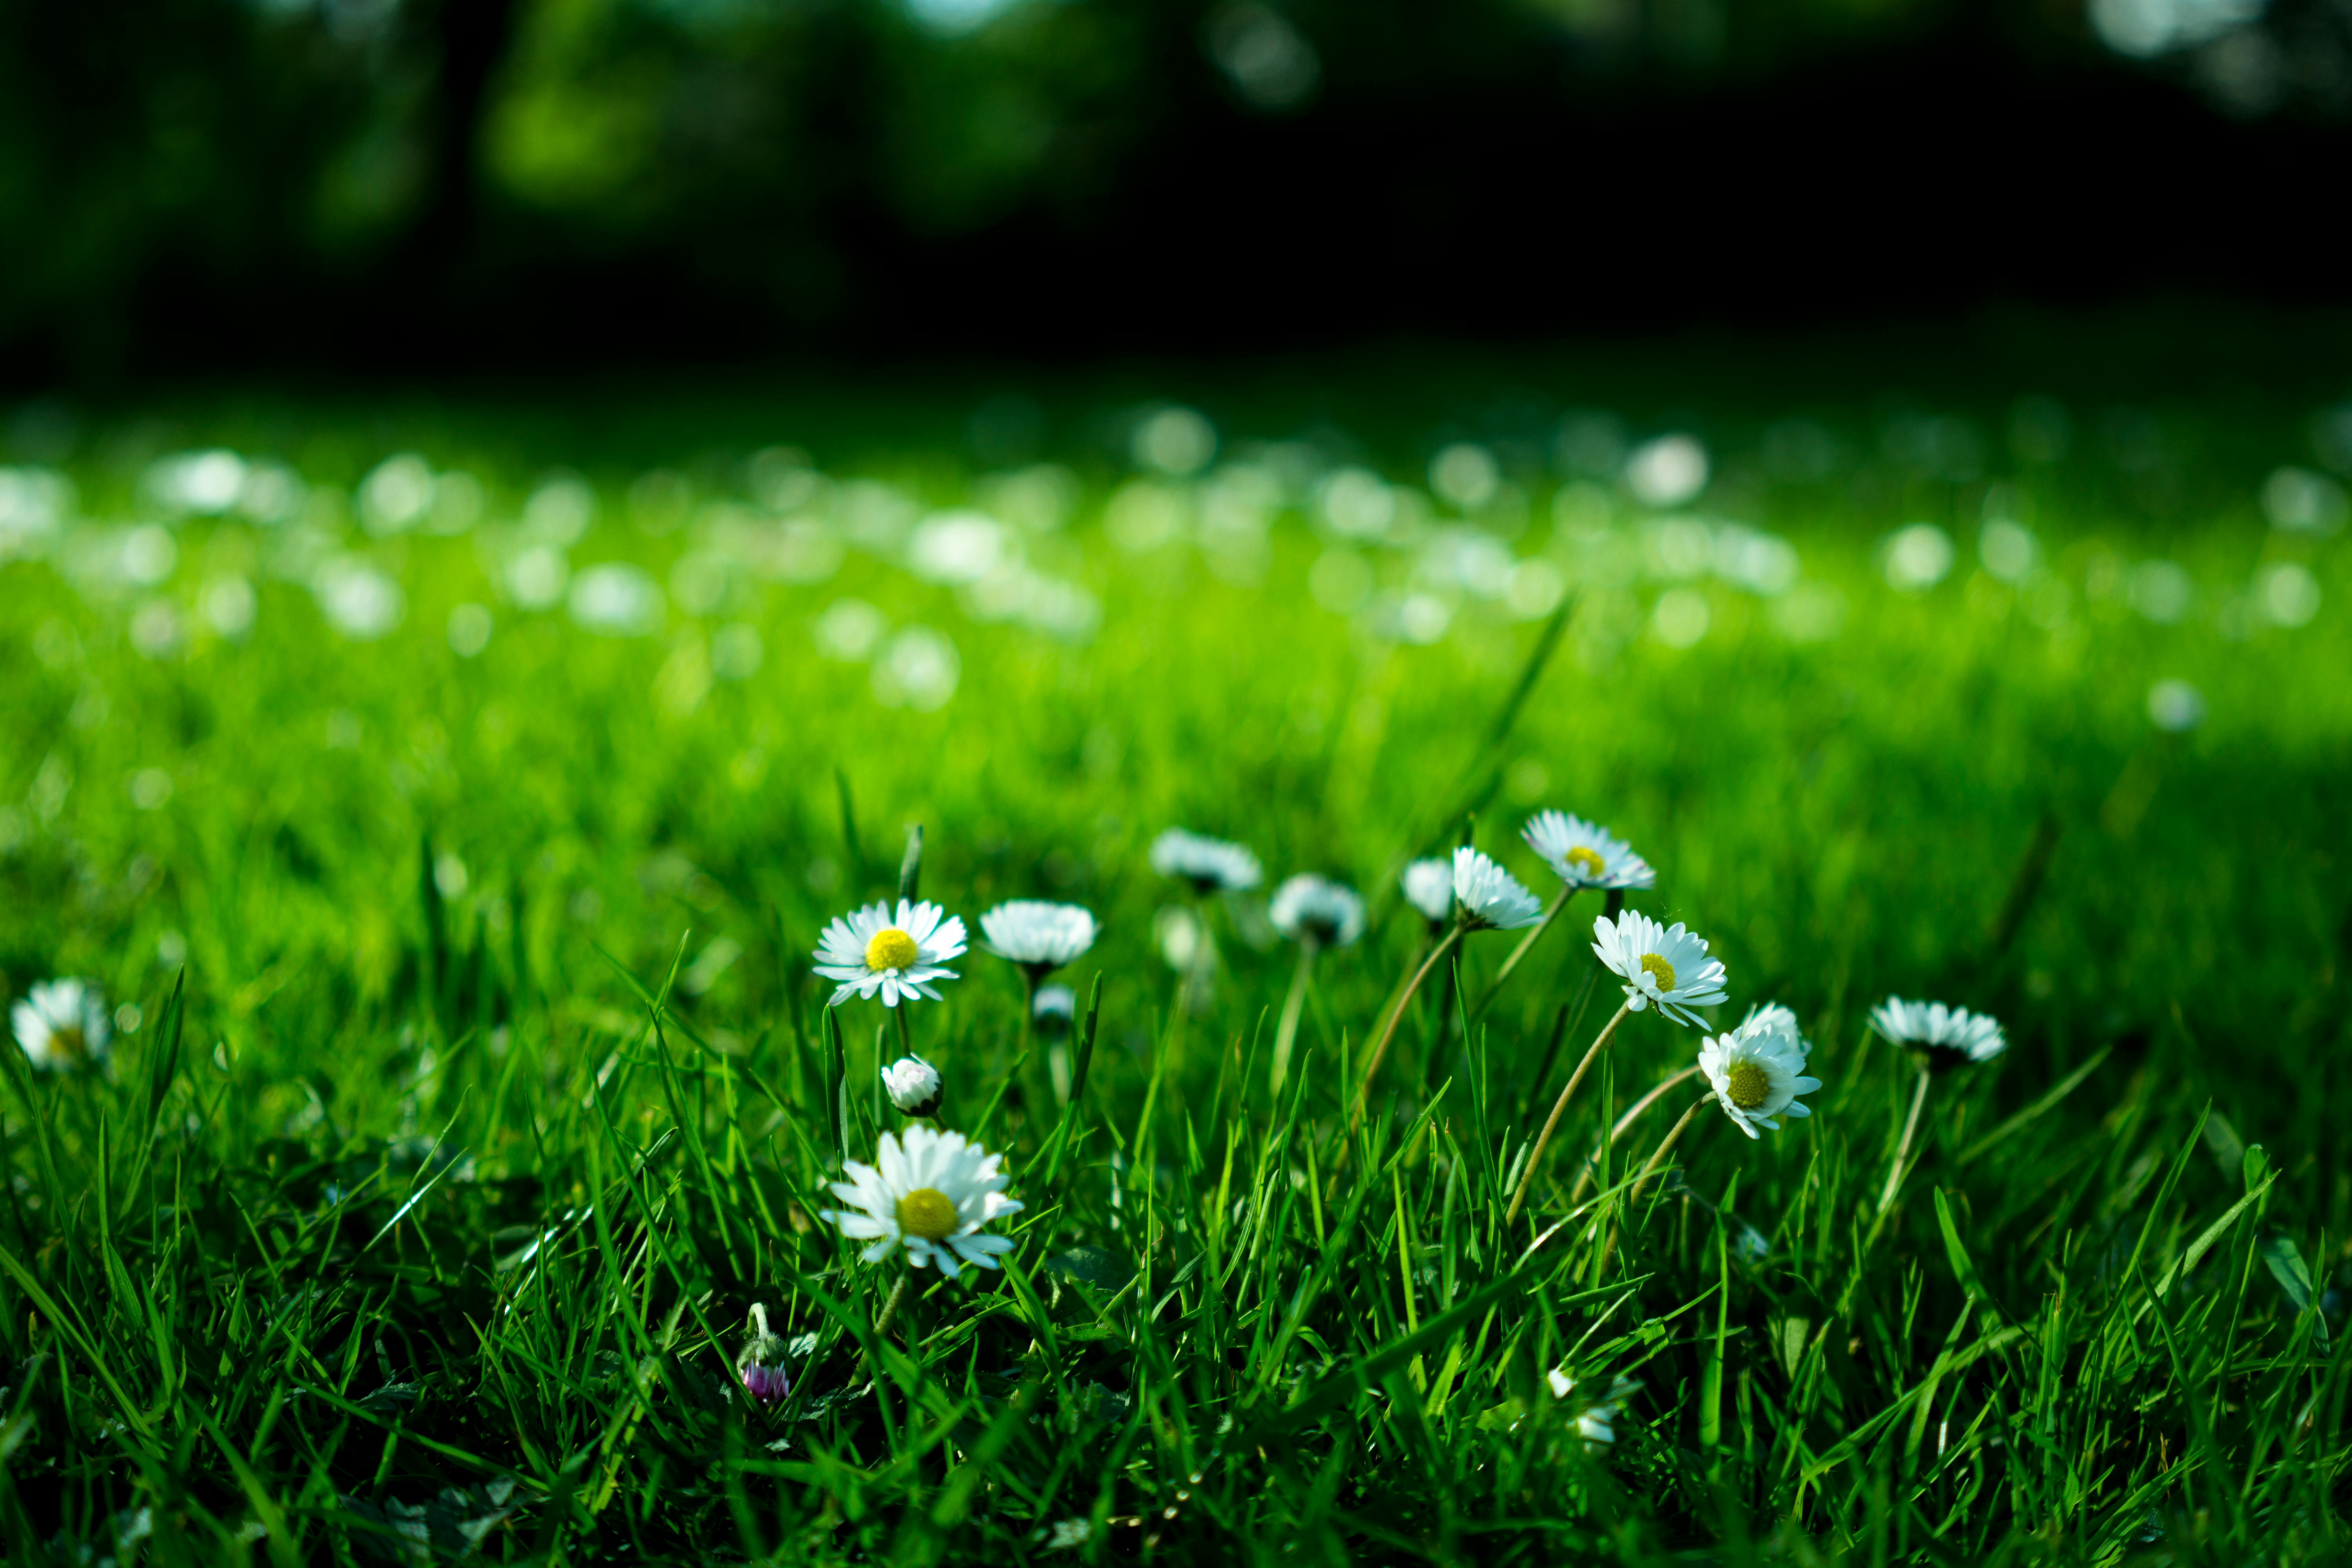 Cỏ (Grass): Mỗi lát cỏ xanh mướt là một khoảnh khắc tuyệt vời để thư giãn và tái tạo năng lượng cho tâm hồn. Hãy cùng ngắm nhìn những hình ảnh về cỏ xanh tươi để mang đến cho bạn cảm giác yên bình và thư thái trong cuộc sống nhé!